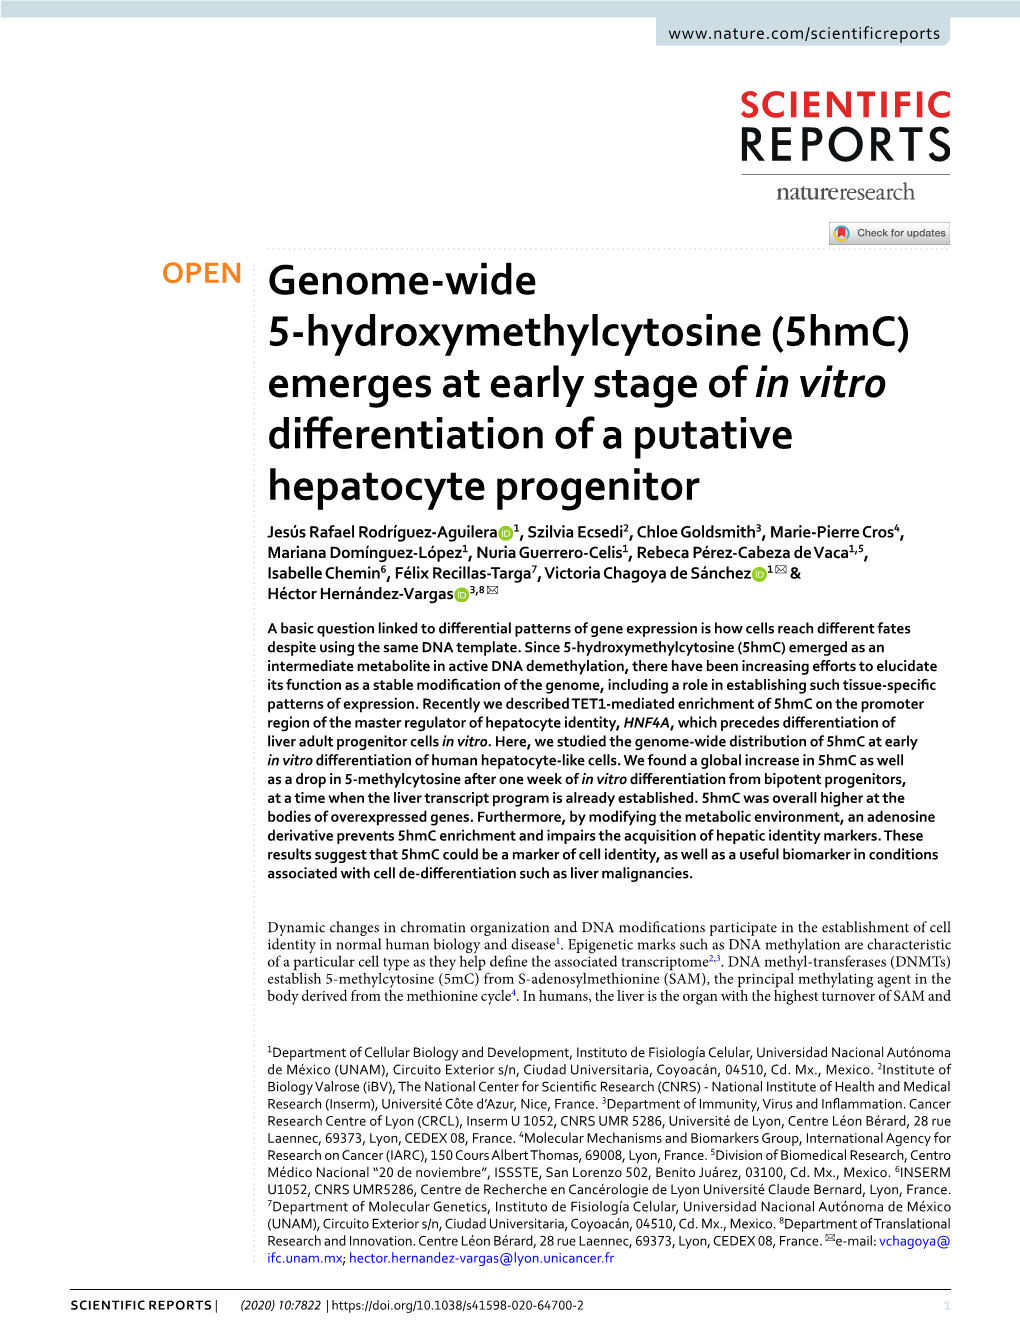 Genome-Wide 5-Hydroxymethylcytosine (5Hmc) Emerges At